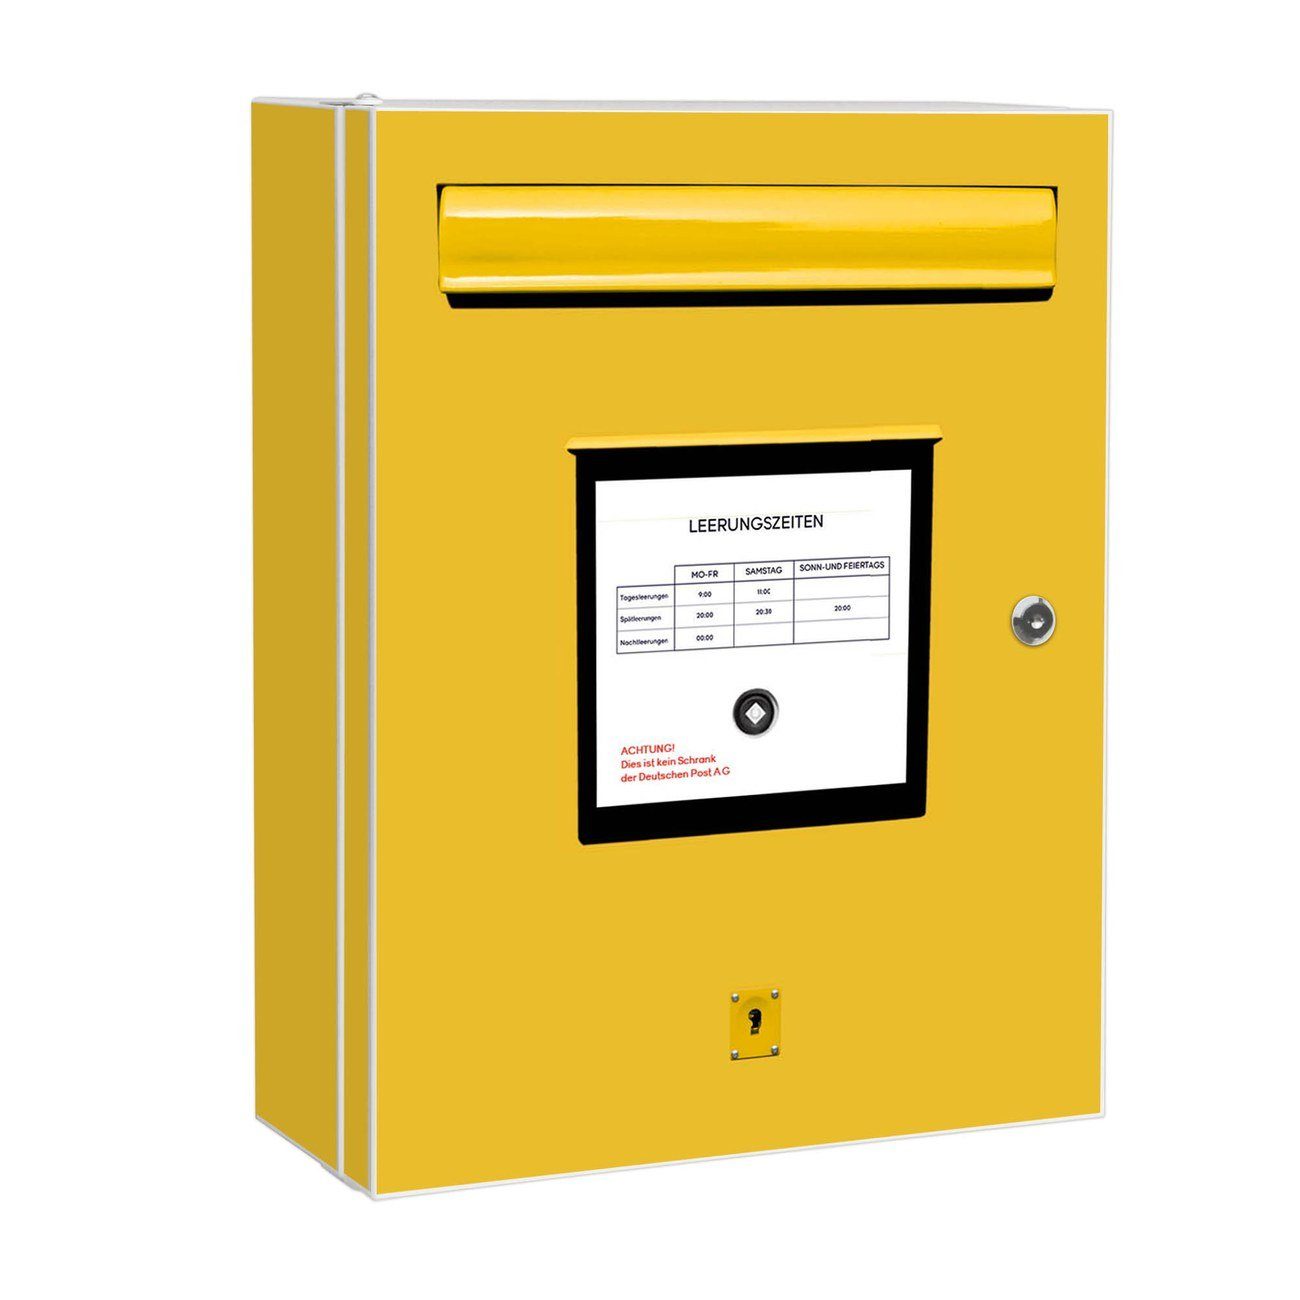 banjado Medizinschrank Stahl Briefkasten Gelb (abschließbar, 3 große und 2 kleine Fächer) 35 x 46 x 15cm weiß